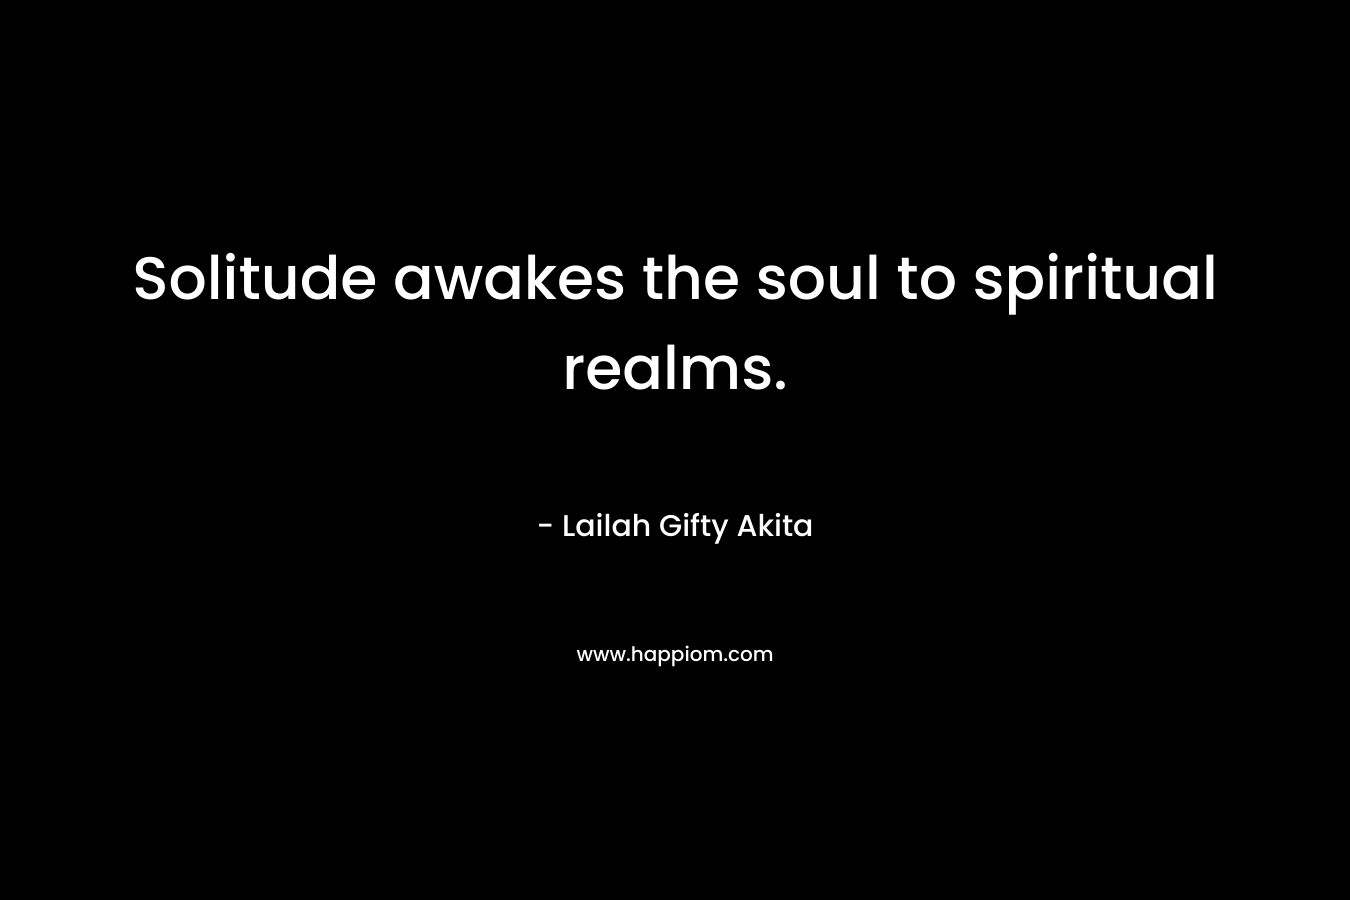 Solitude awakes the soul to spiritual realms.